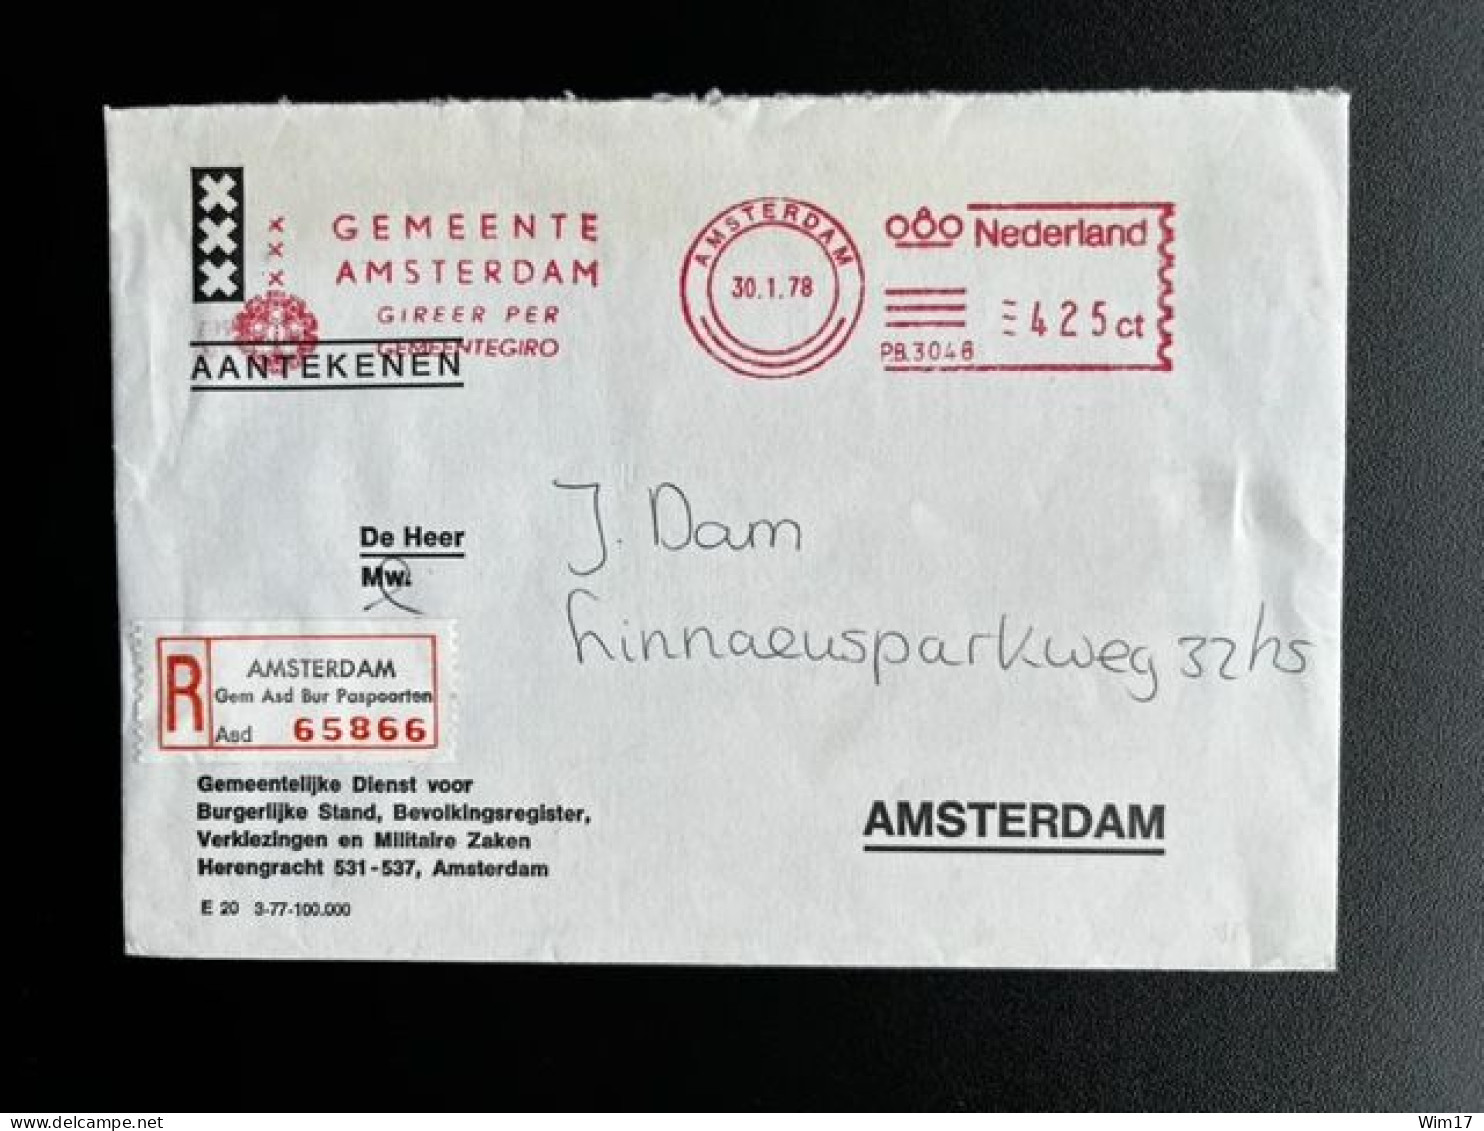 NETHERLANDS 1978 REGISTERED LETTER AMSTERDAM GEM ASD BUR PASPOORTEN 30-01-1978 NEDERLAND AANGETEKEND - Lettres & Documents